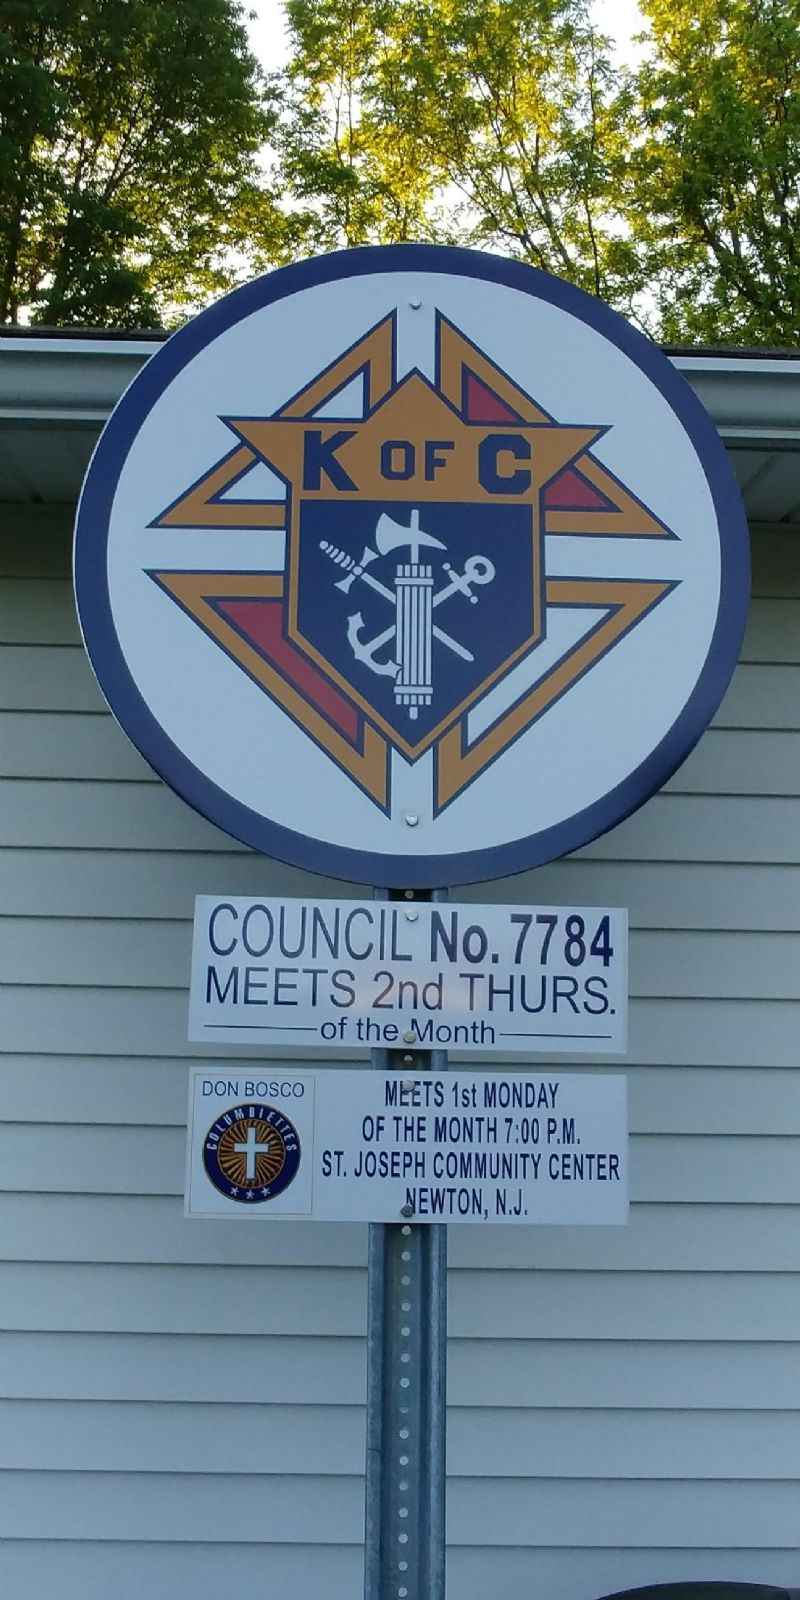 Don Bosco Council #7784